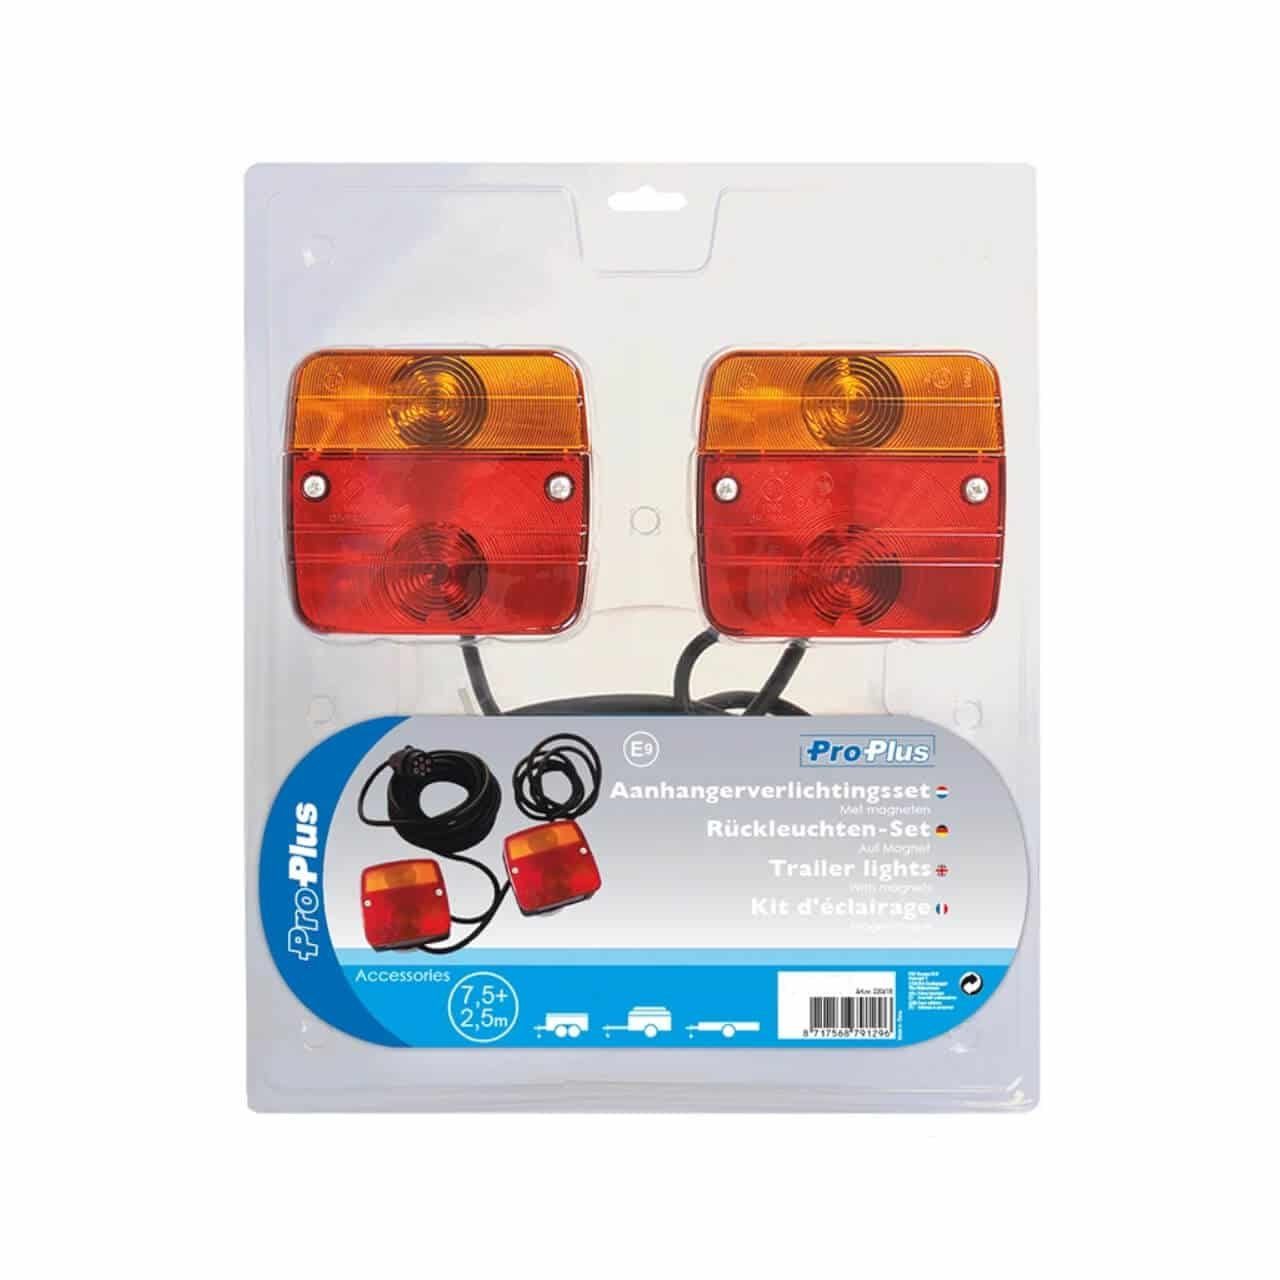 Nebel mit m, für Rückleuchte - Anhänger ProPlus 7,5 Wohnwagen Auto Rück-Leuchte Nutzfahrzeuge Magneten Rückleuchten-Set